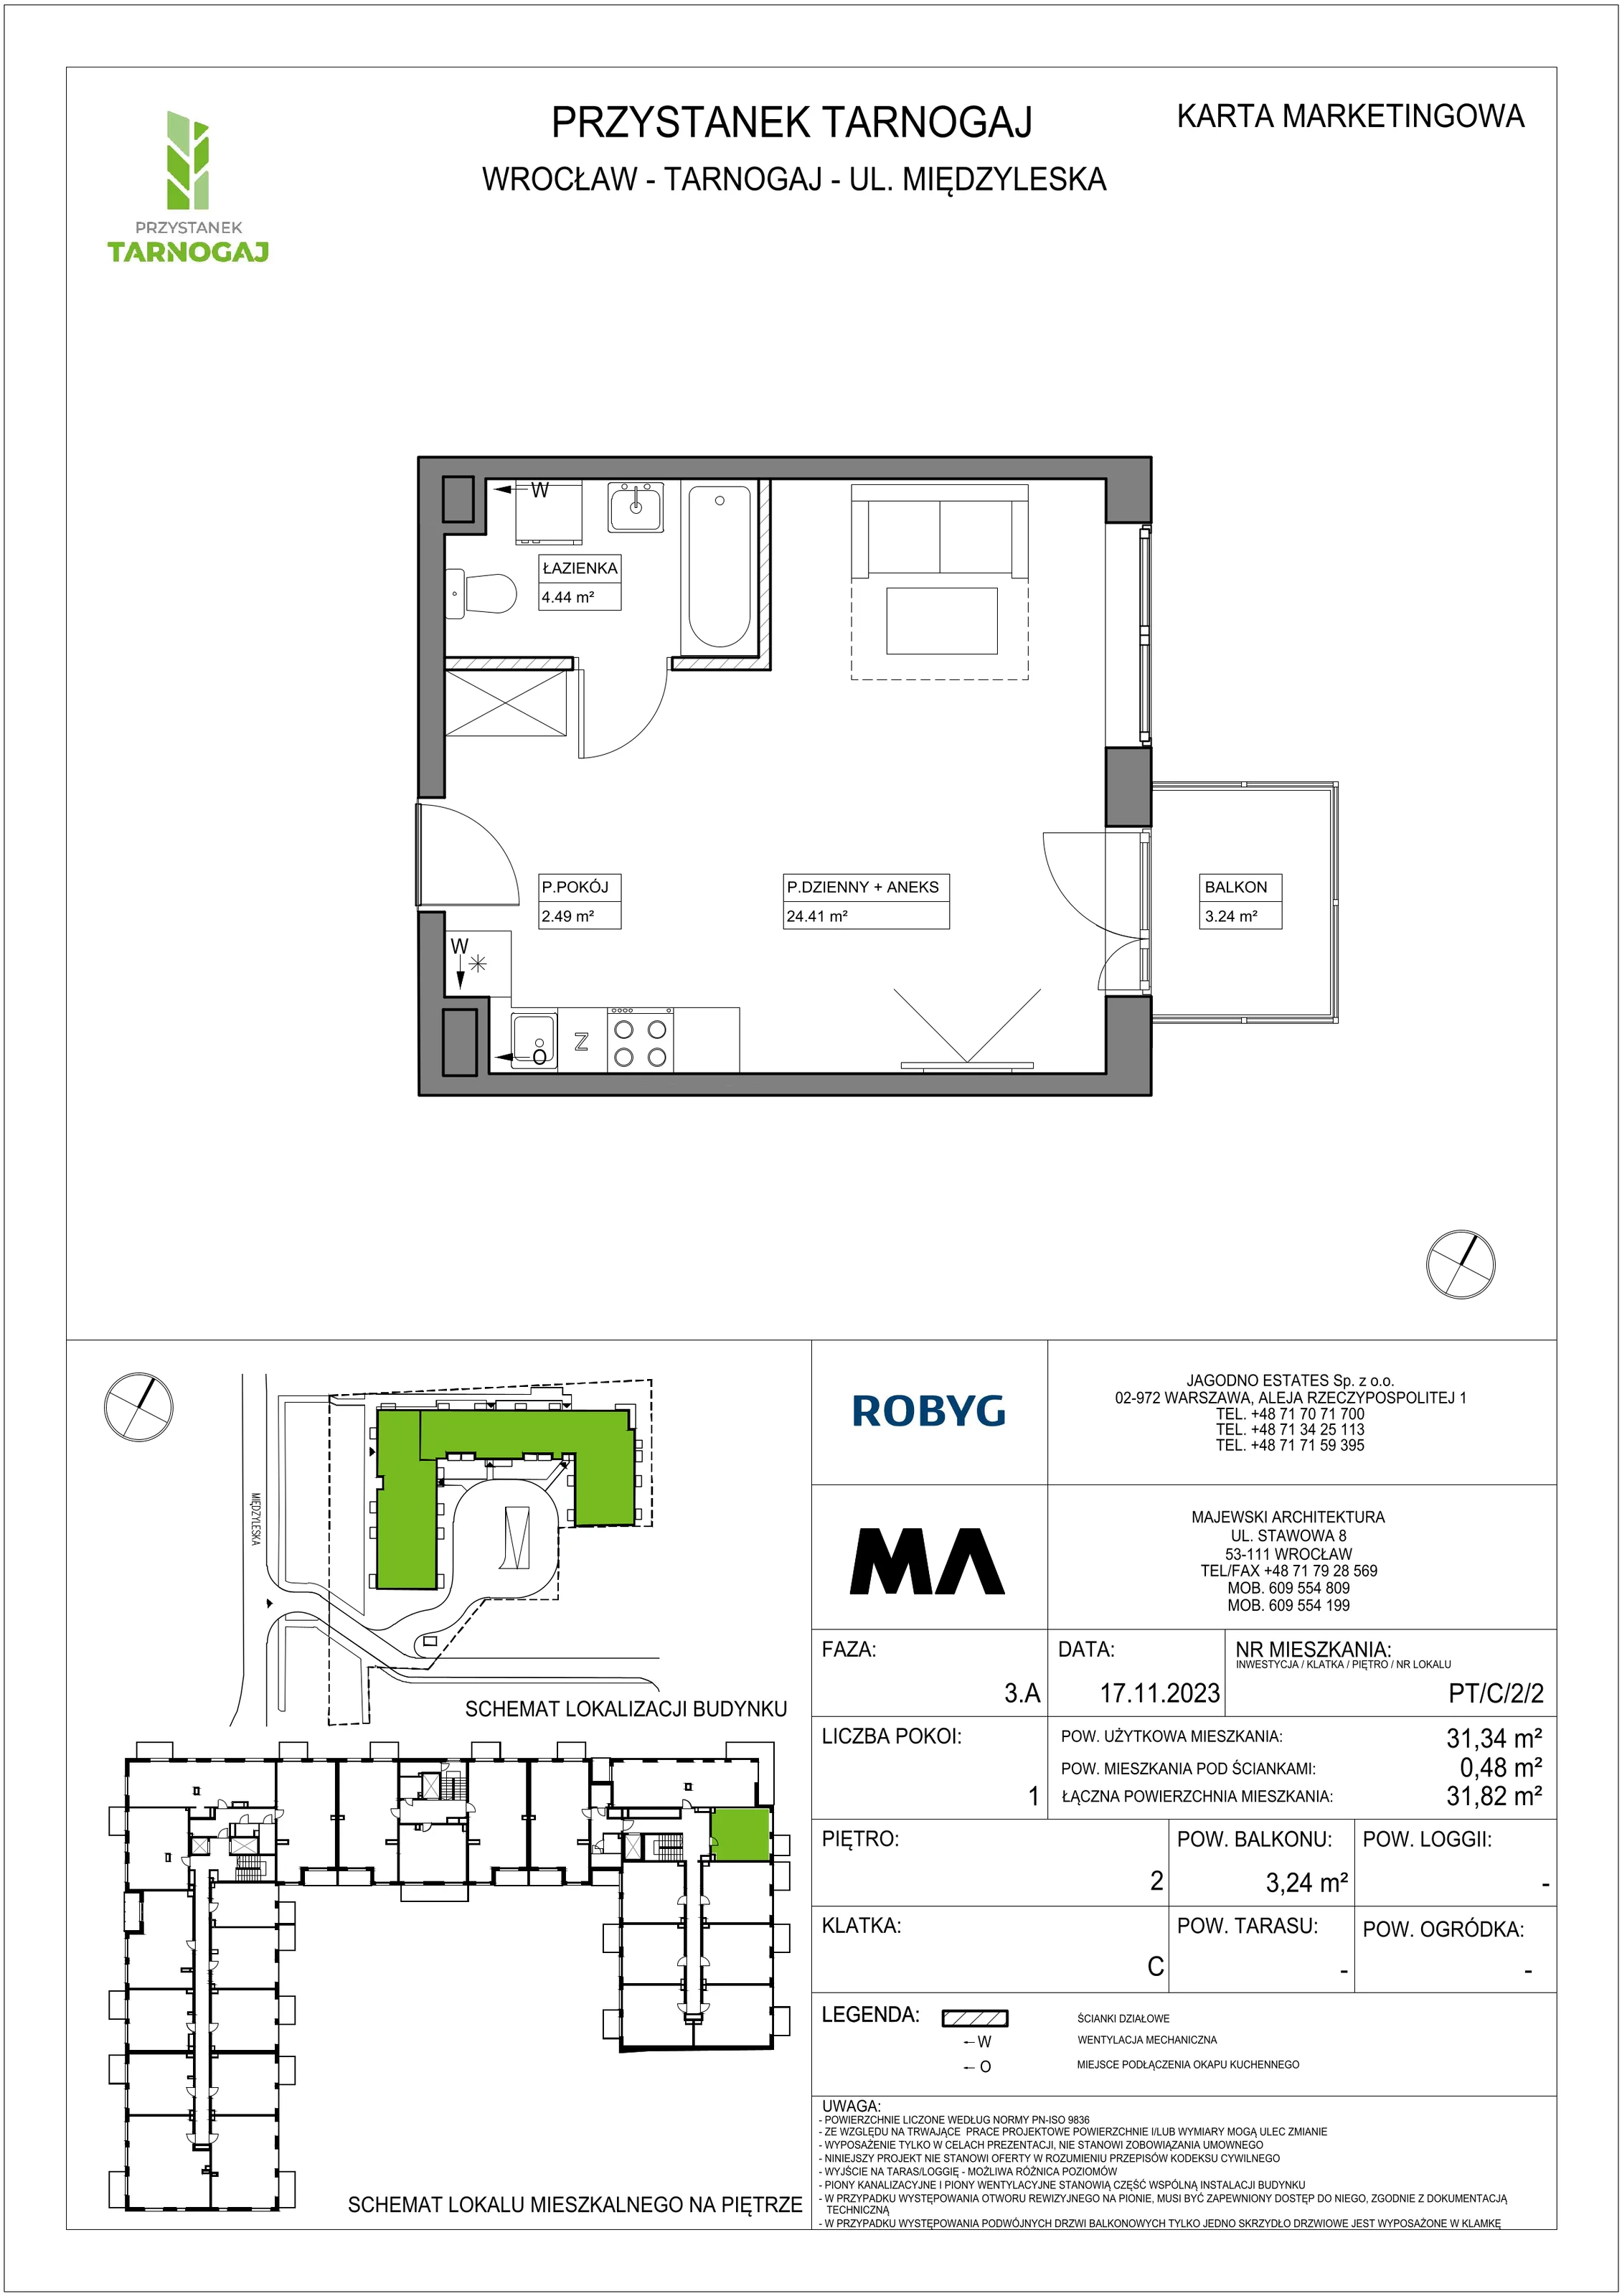 Mieszkanie 31,34 m², piętro 2, oferta nr PT/C/2/2, Przystanek Tarnogaj, Wrocław, Tarnogaj, Krzyki, ul. Międzyleska / Gazowa